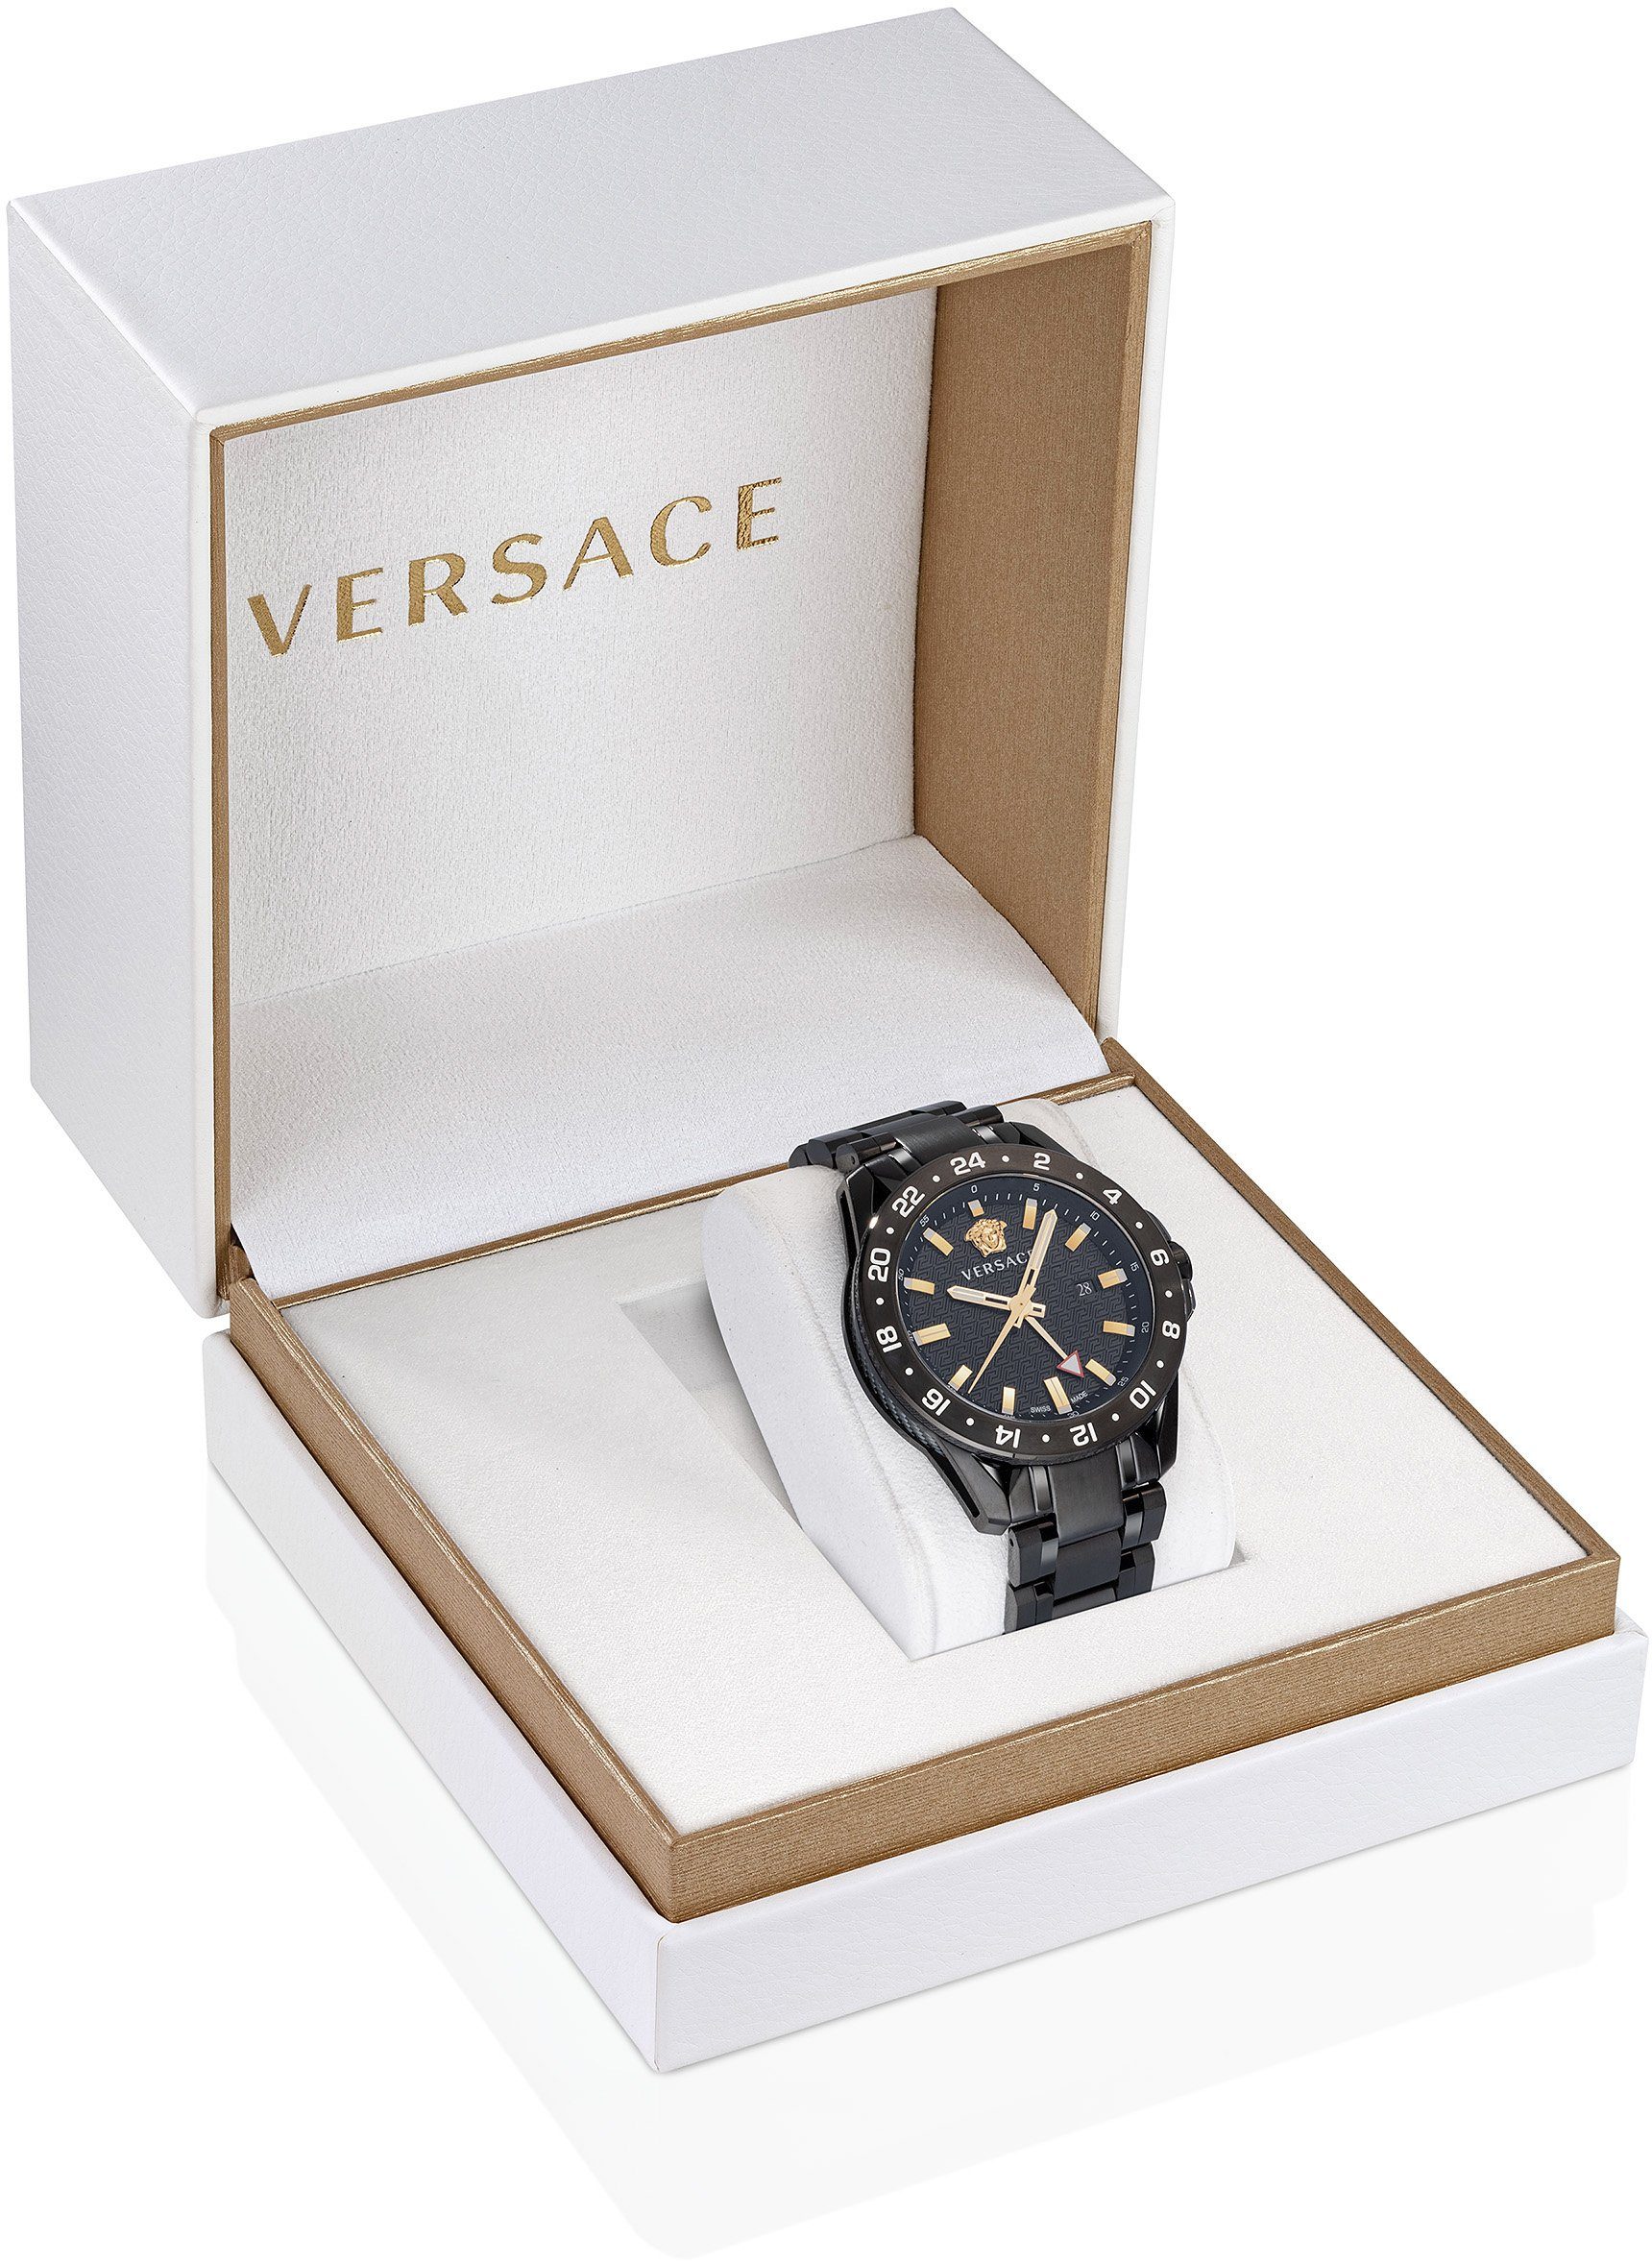 SPORT Schweizer Uhr TECH VE2W00622 Versace GMT,